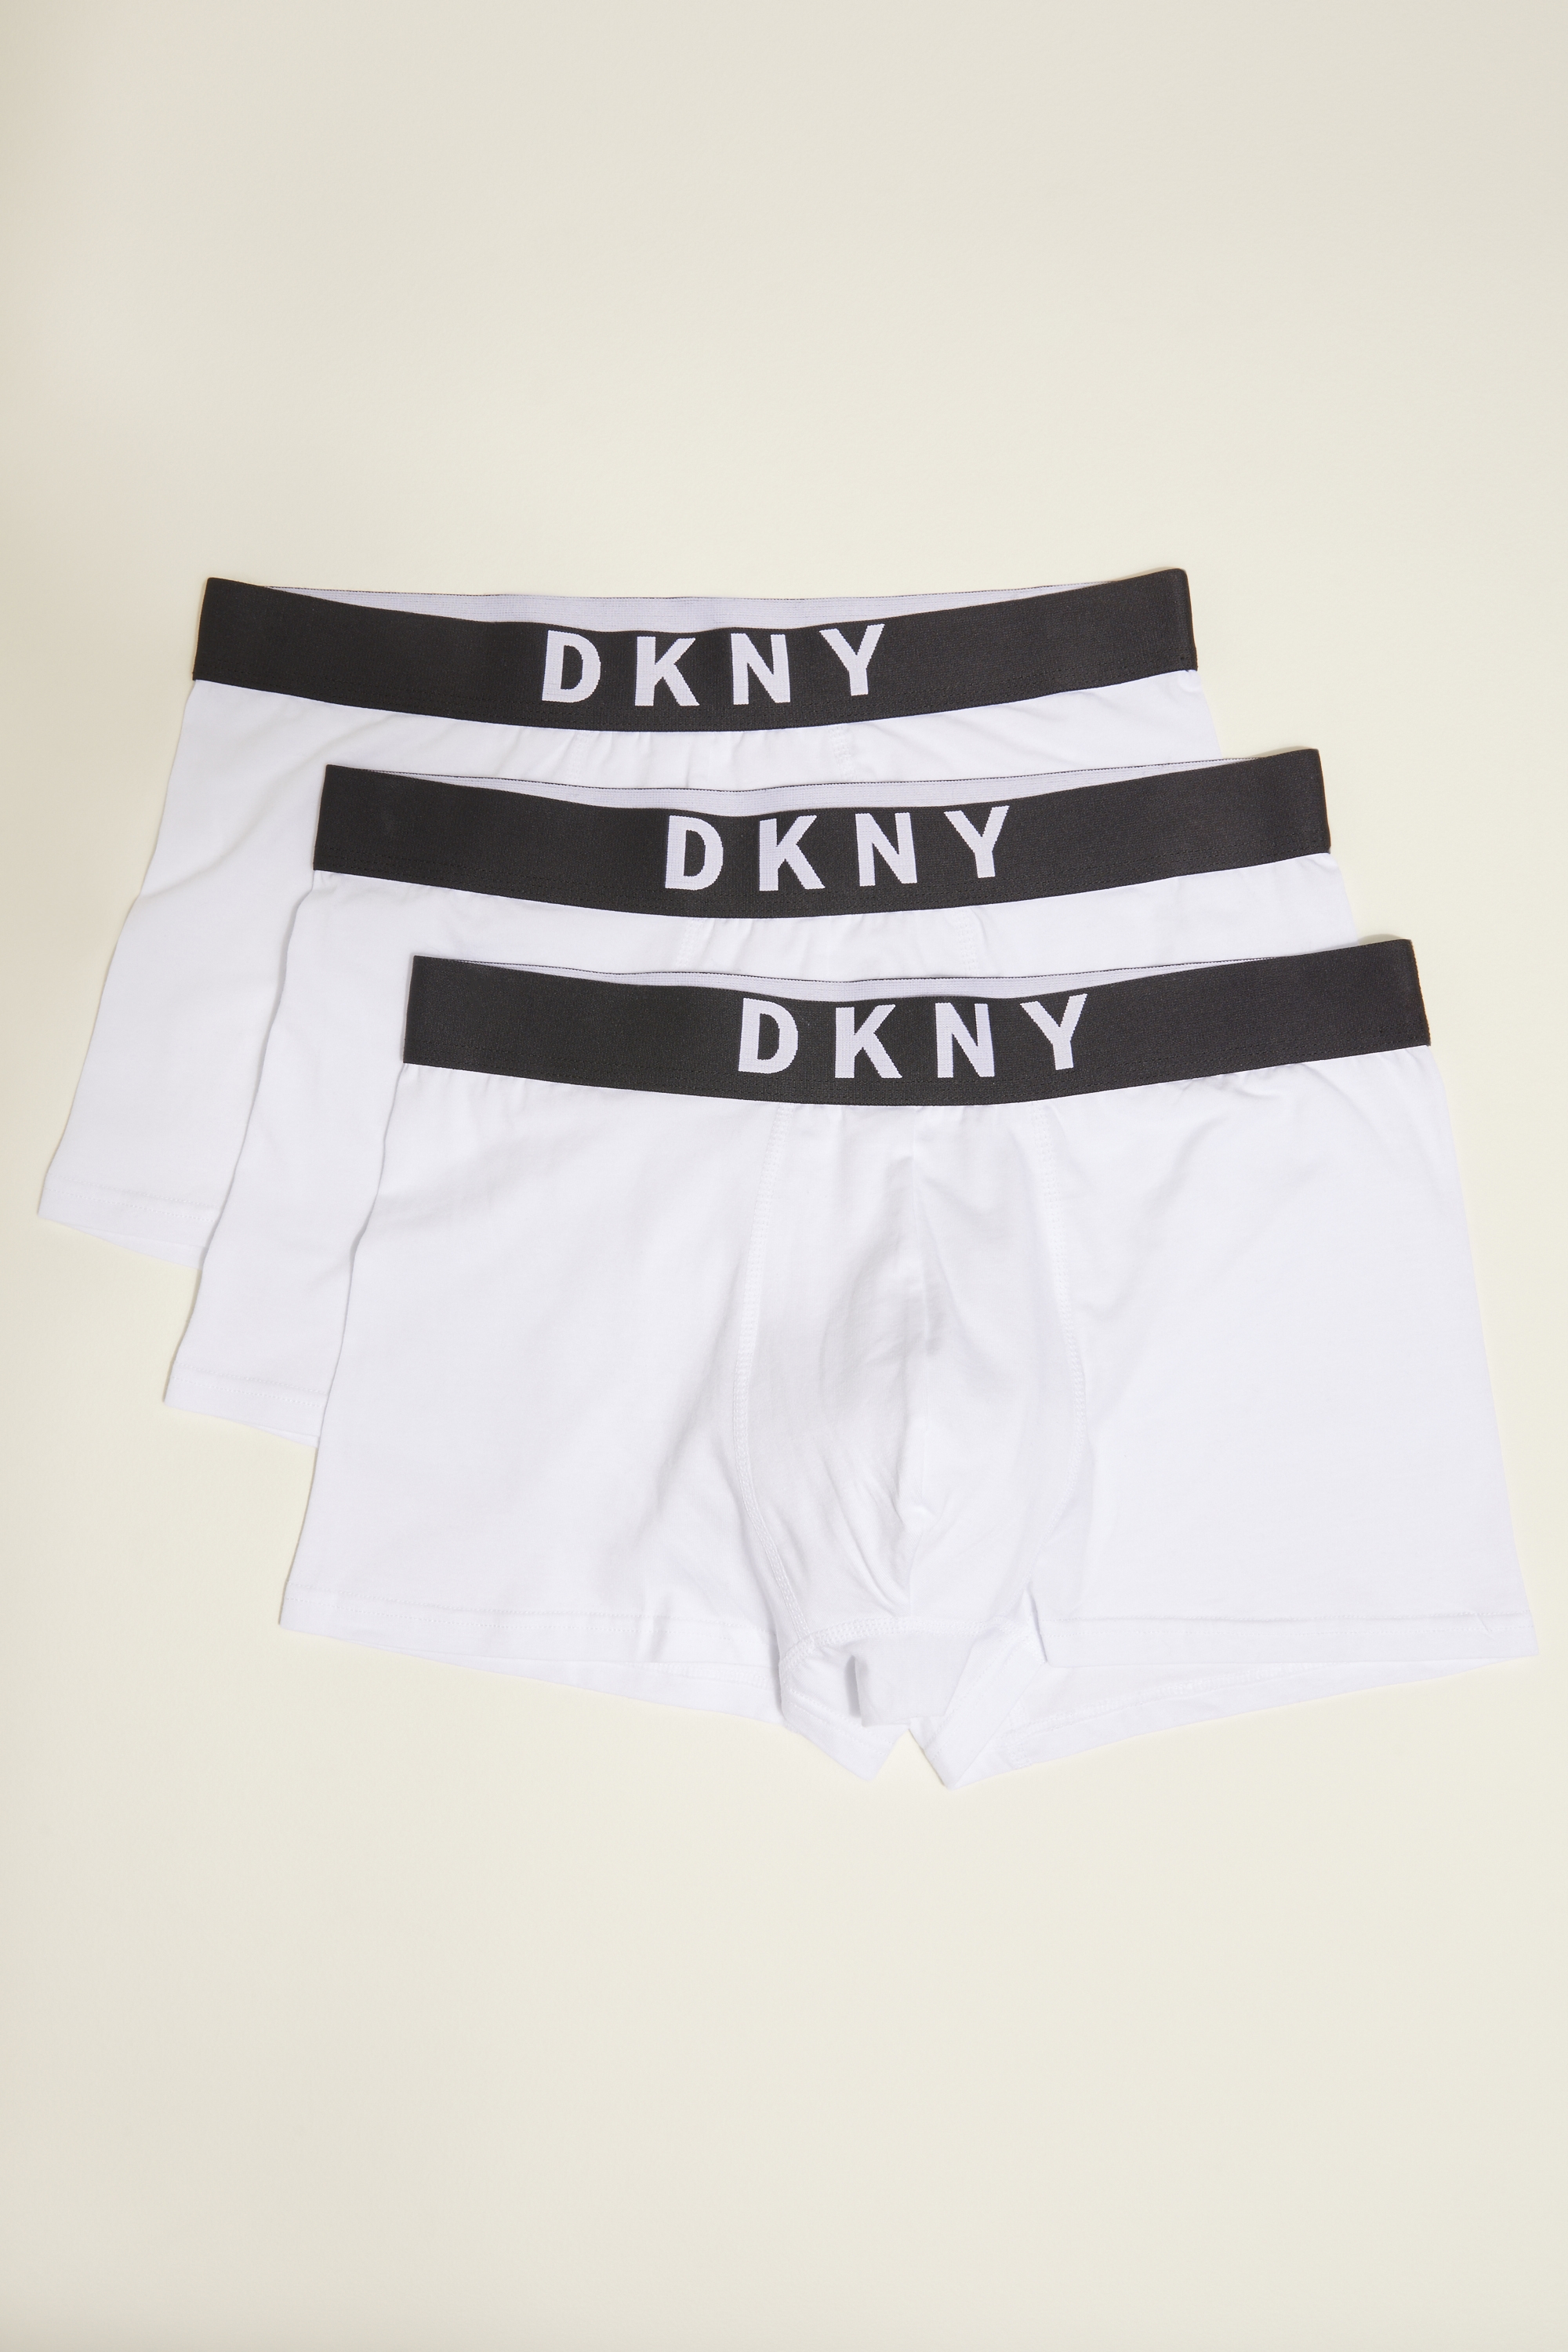 DKNY New York White 3-Pack Trunks